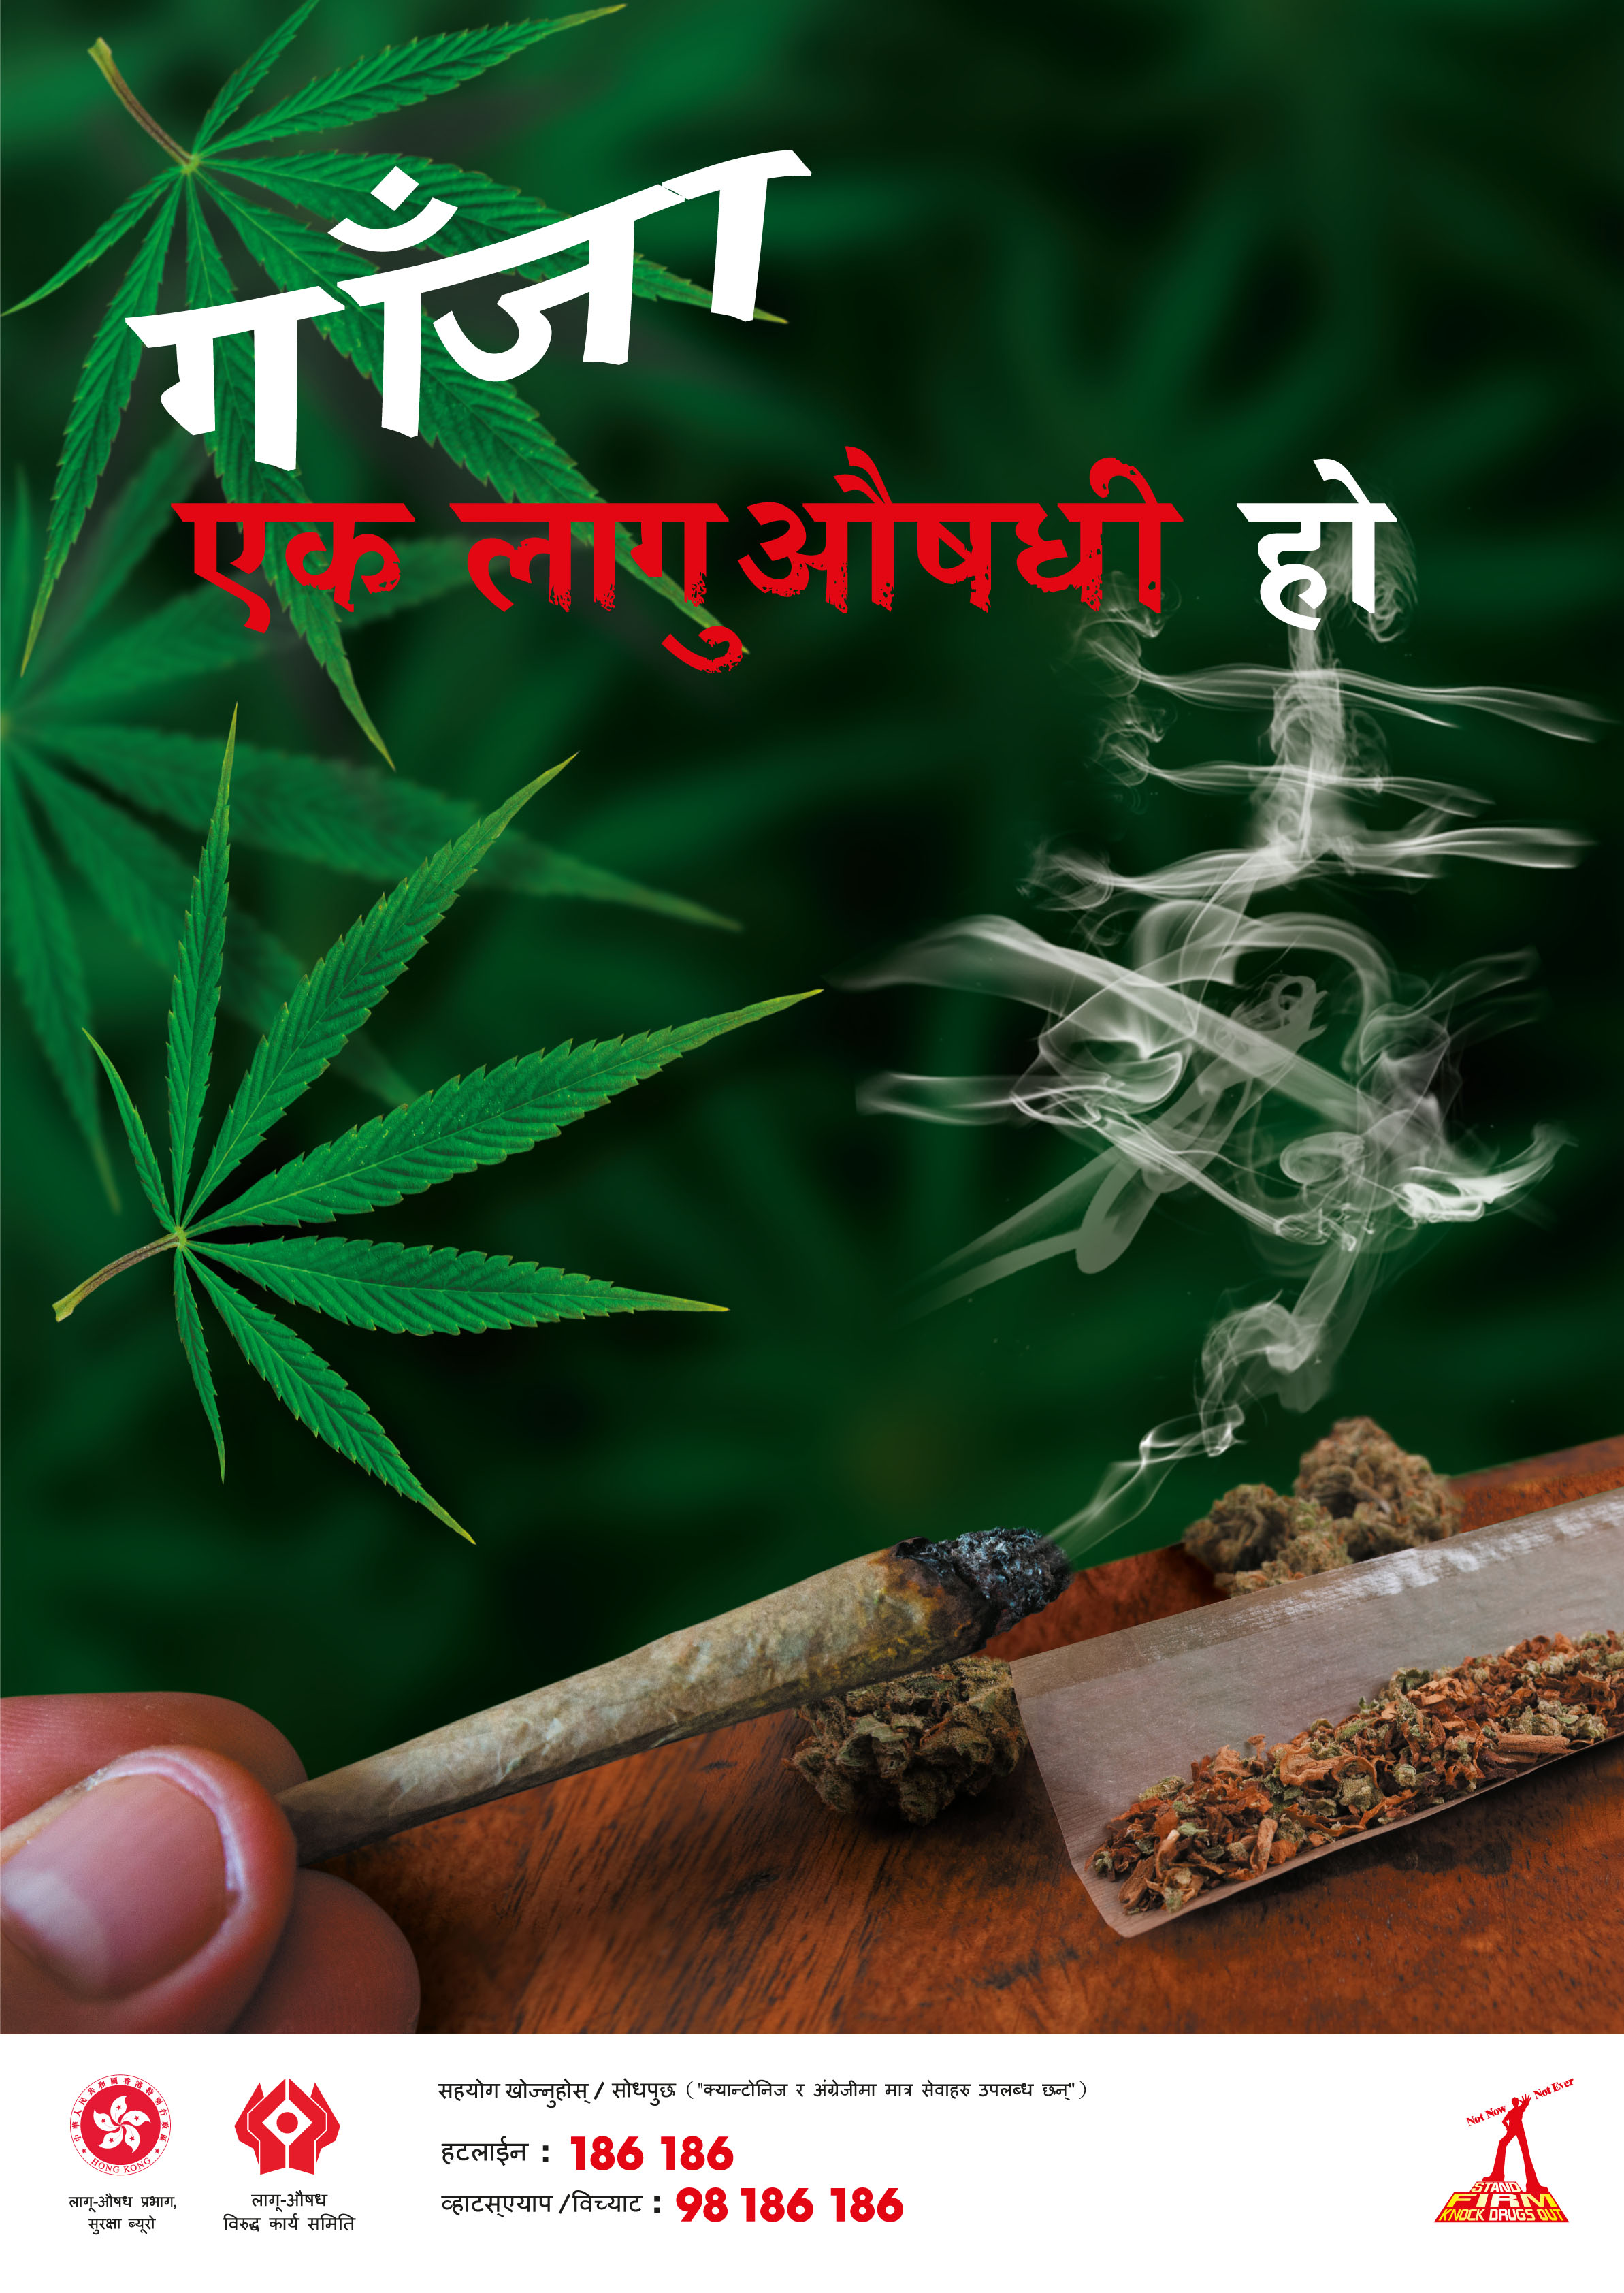 禁毒海报「 大麻係毒品 」－ 尼泊尔文版本